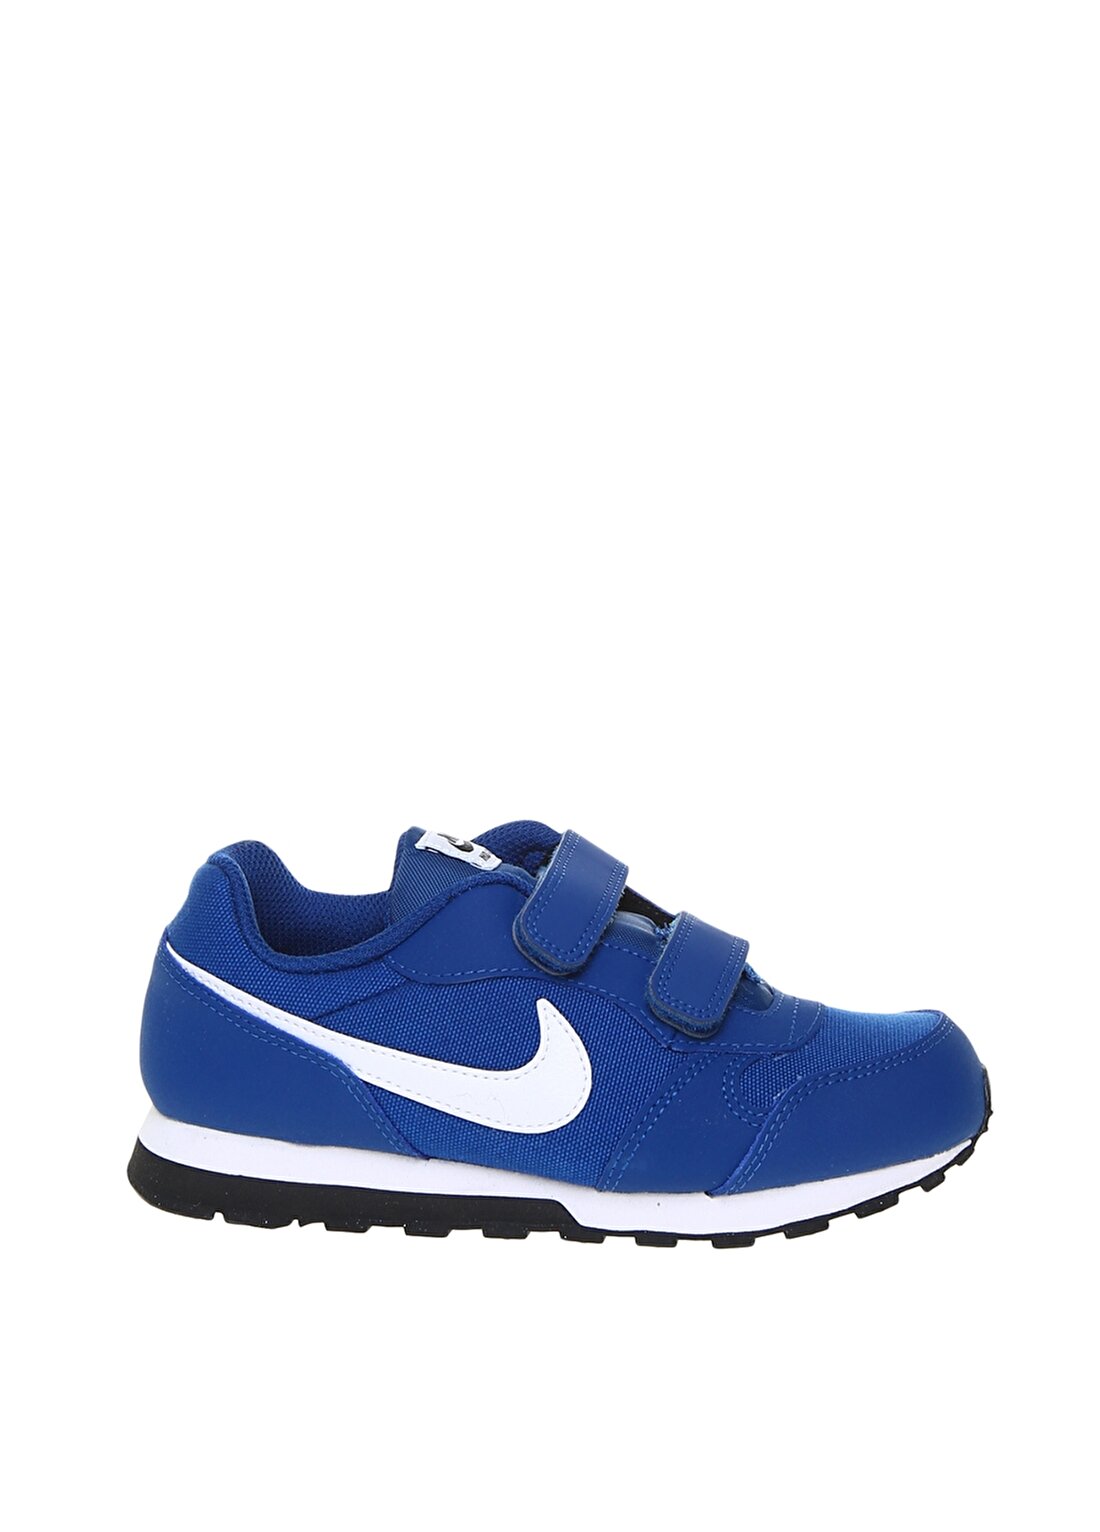 Nike MD Runner 2 (PS) Okul Öncesi Erkek Çocuk Yürüyüş Ayakkabısı